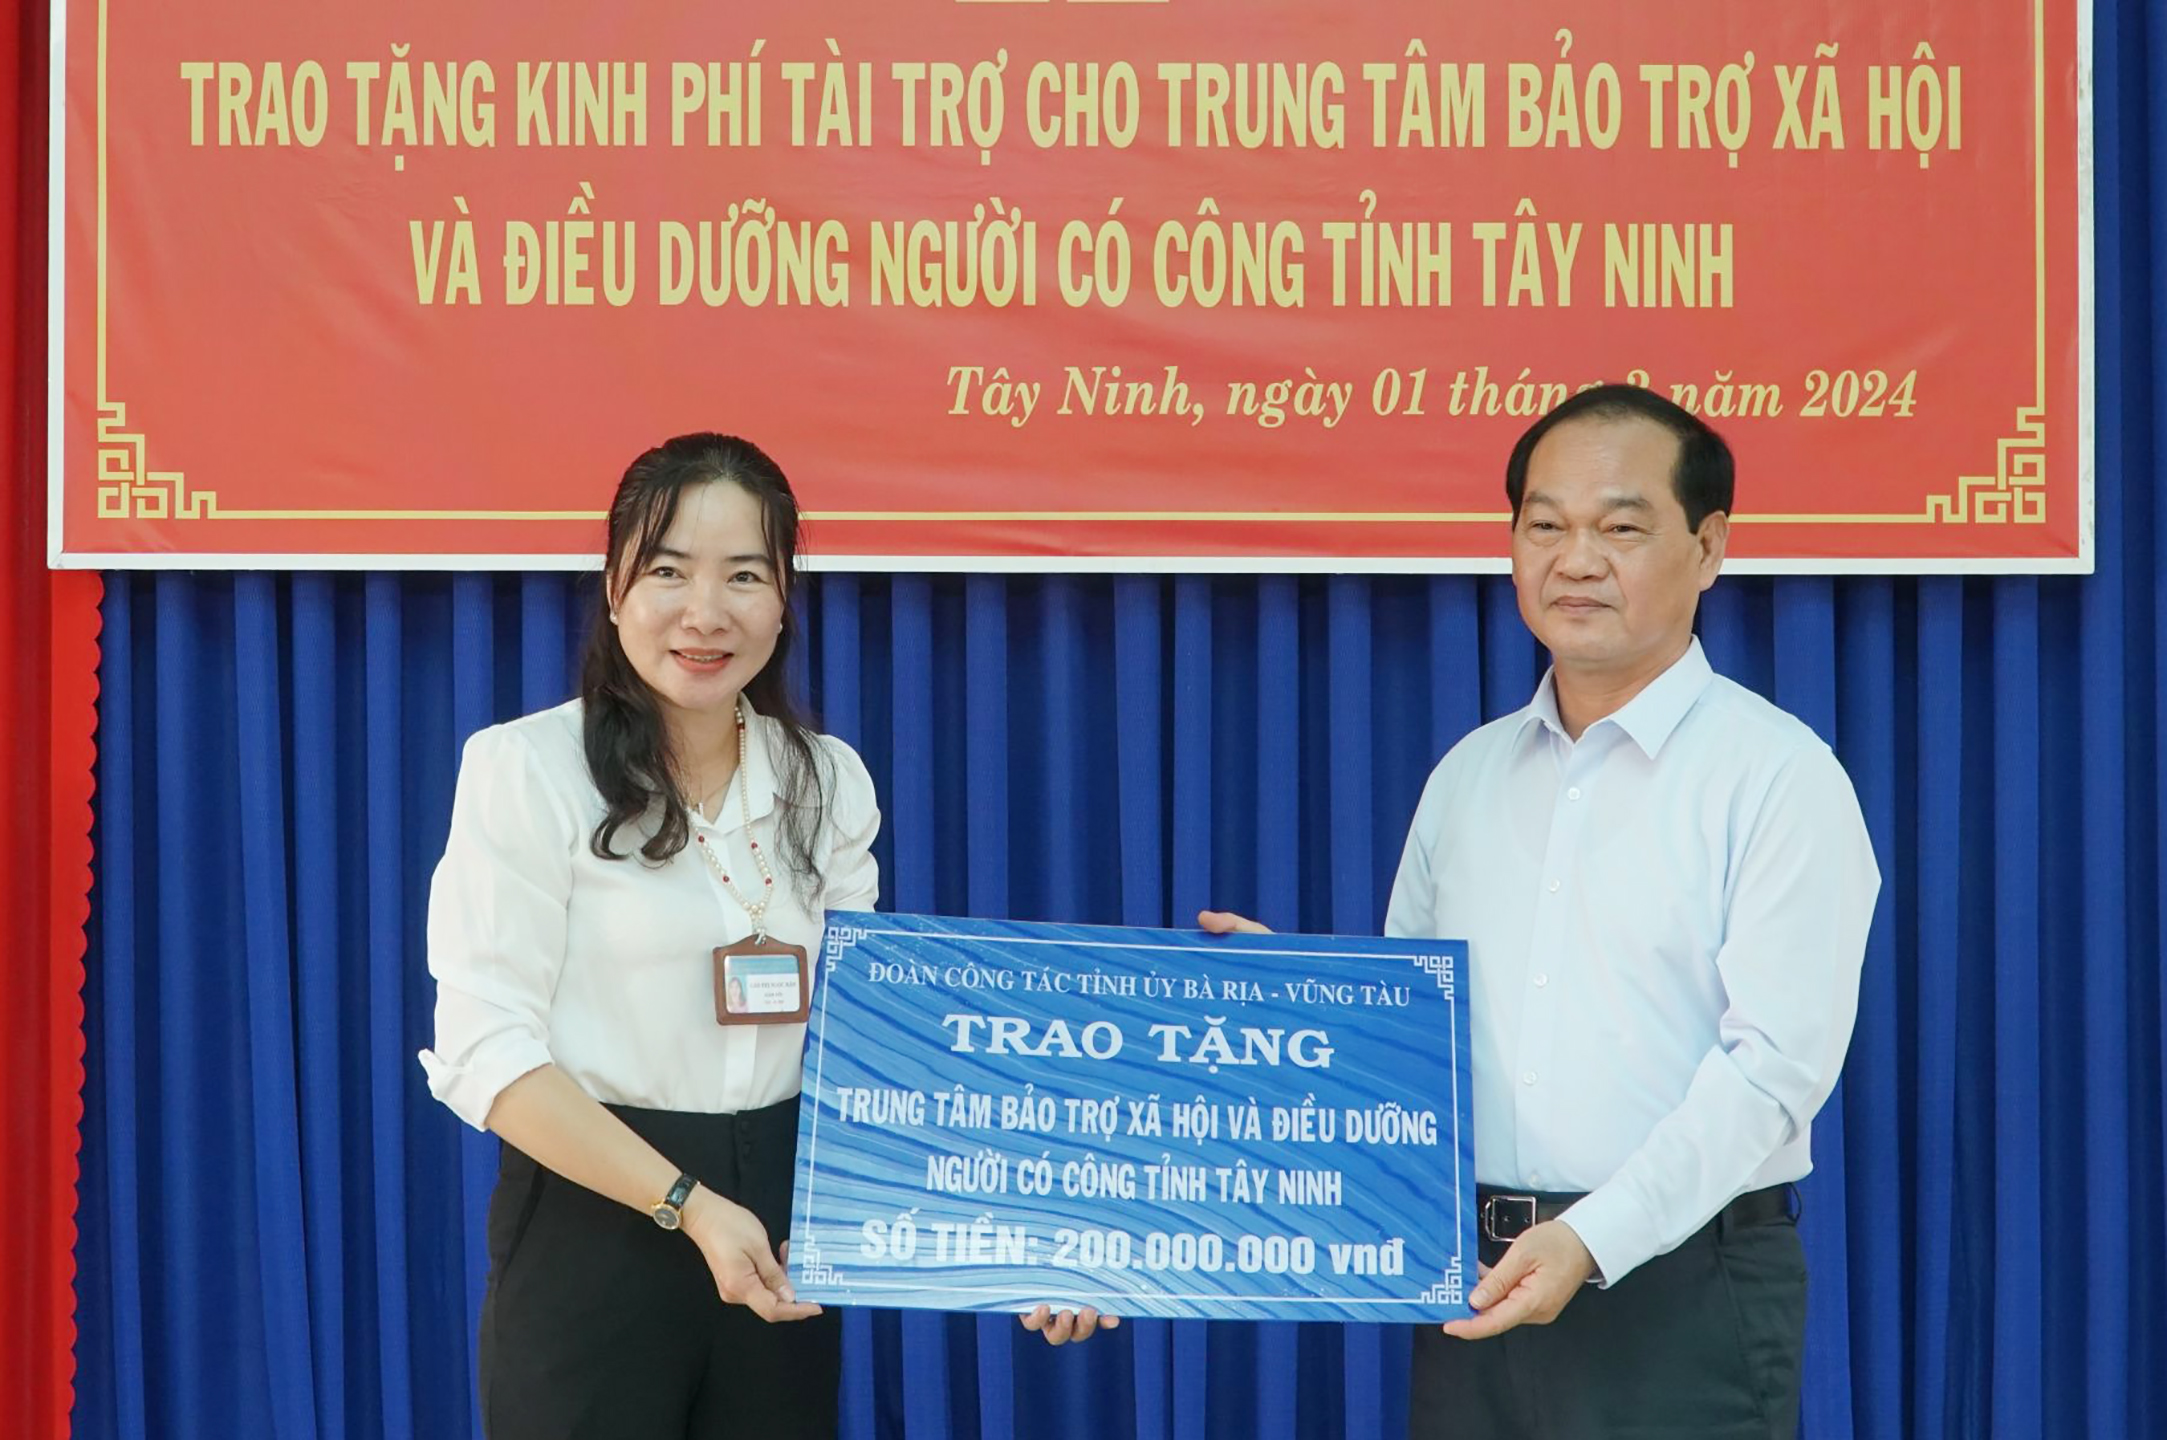 Phó Chủ tịch HĐND tỉnh Mai Ngọc Thuận trao bảng tượng trưng số tiền 200 triệu đồng đến đại diện Trung tâm Bảo trợ xã hội và Điều dưỡng Người có công Tây Ninh